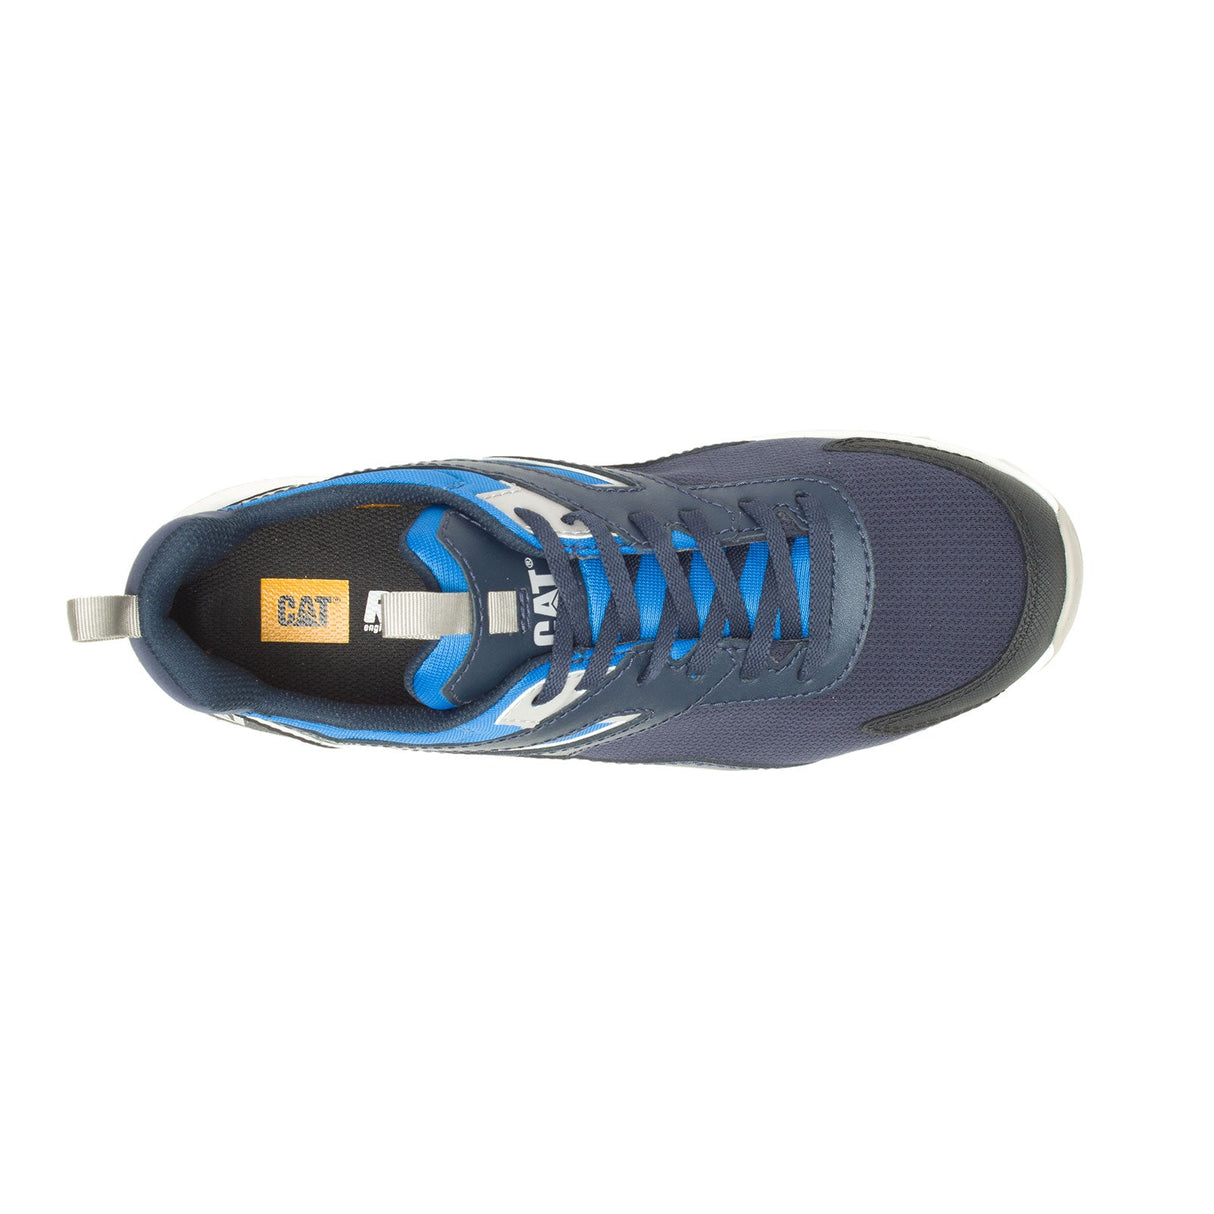 Caterpillar Streamline Runner Men's Composite-Toe Work Shoes P91609-7